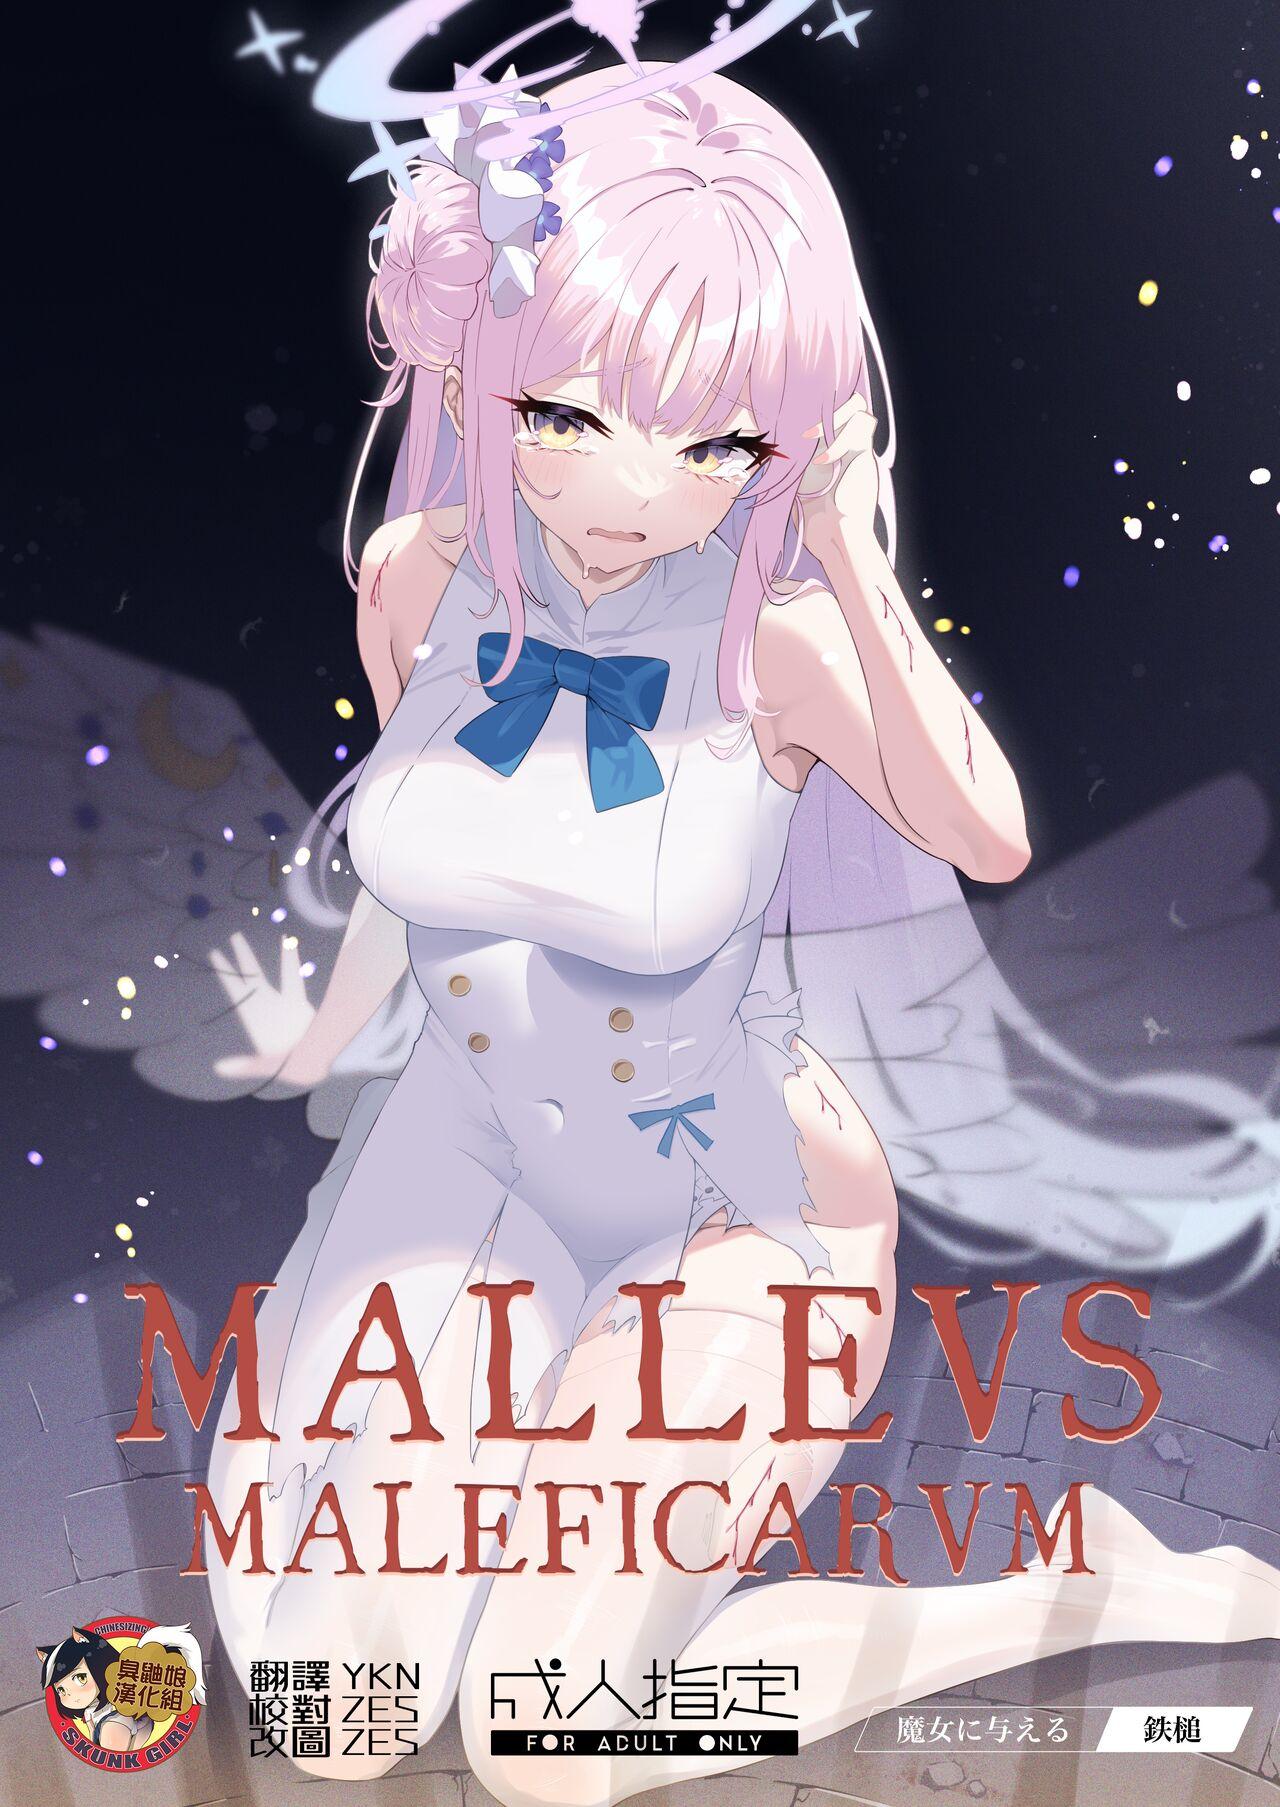 Malleus Maleficarum 1